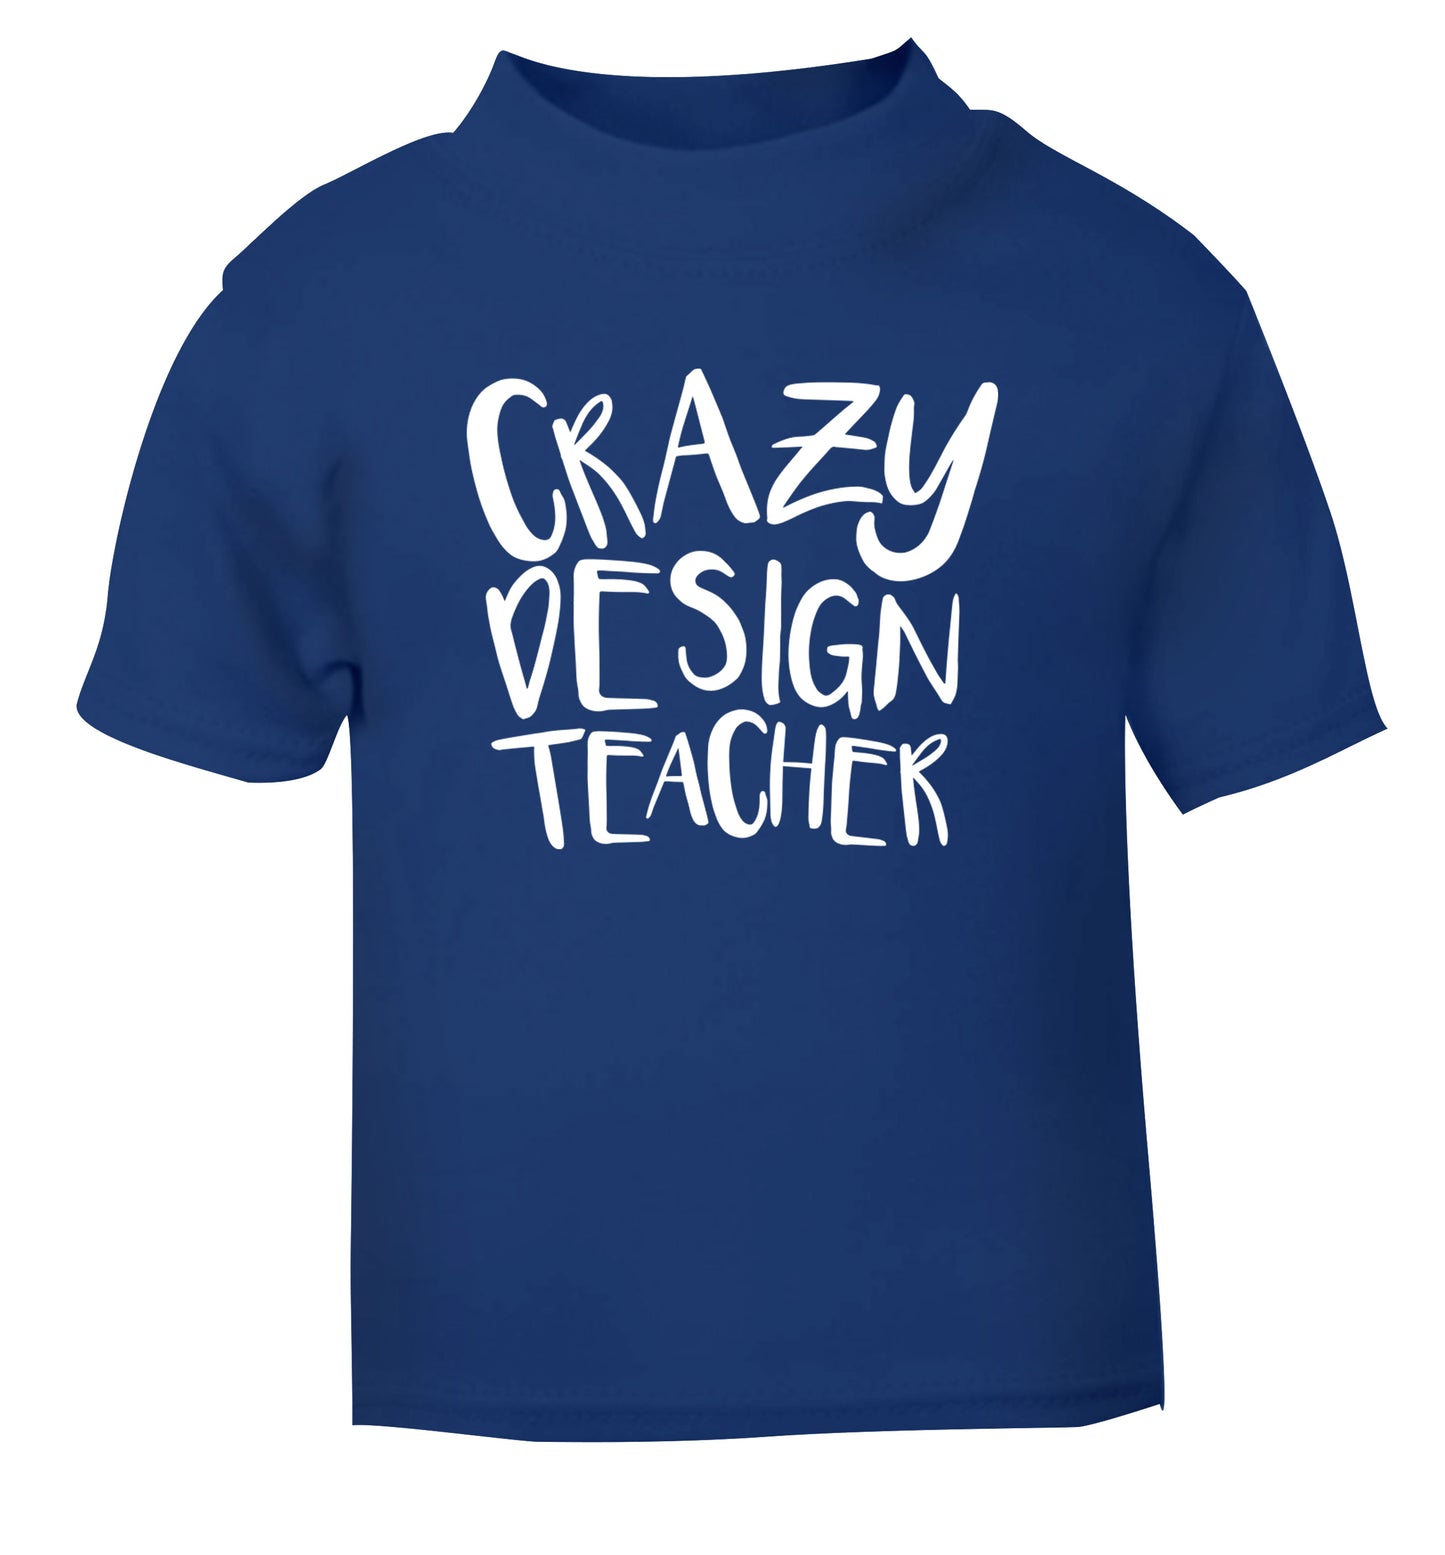 Crazy design teacher blue Baby Toddler Tshirt 2 Years